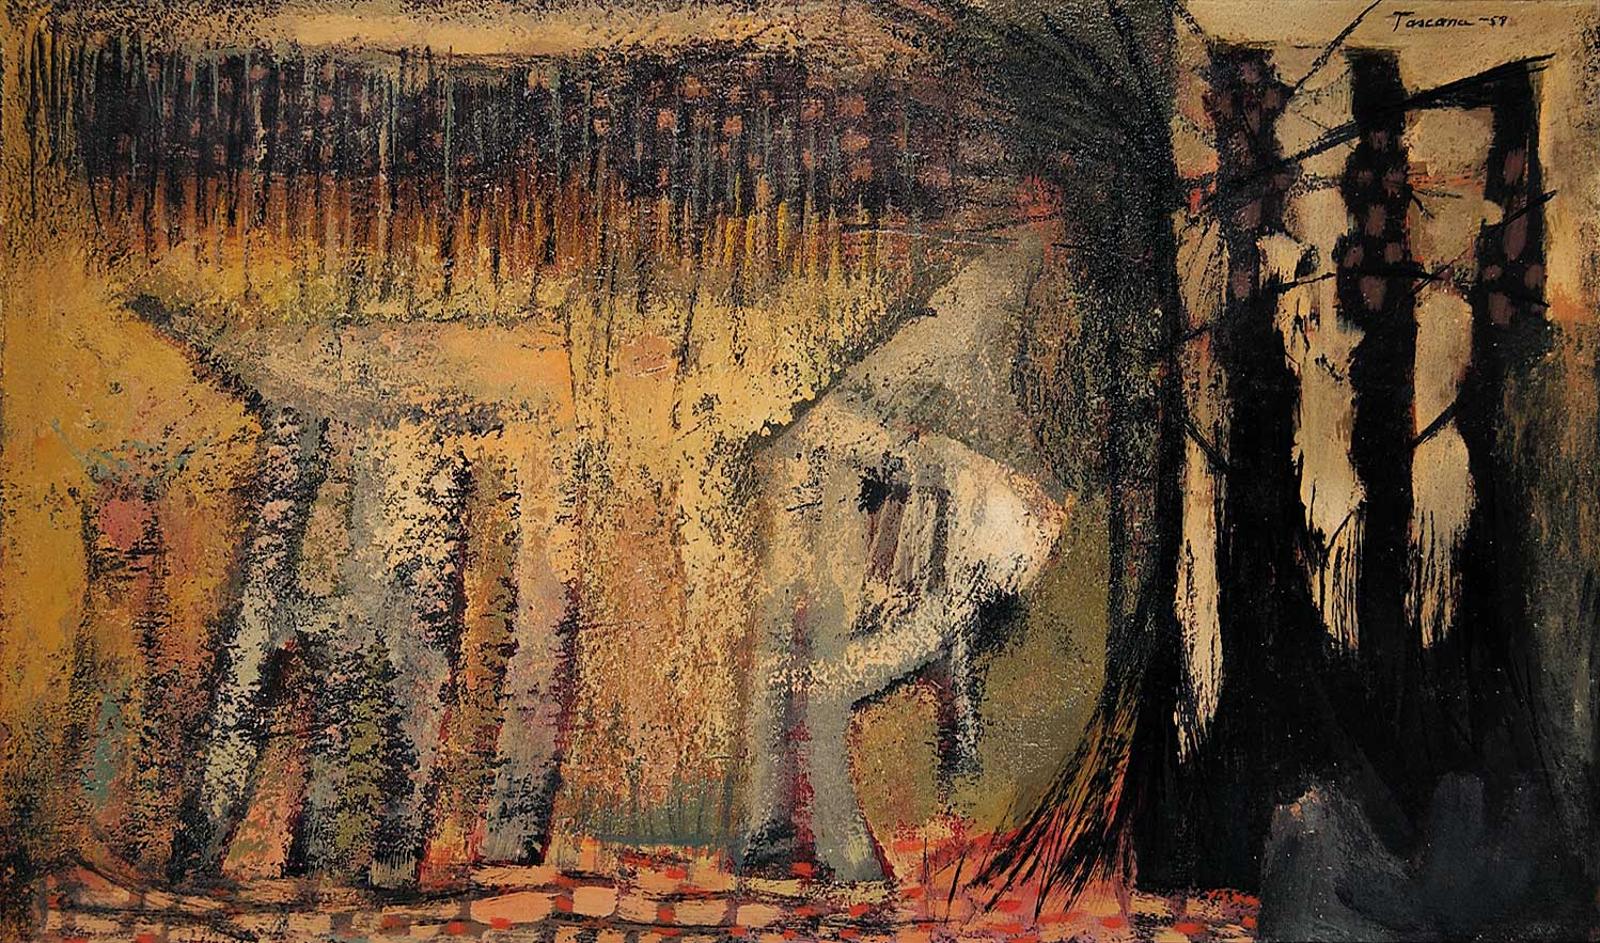 Antonia [Tony] Tascona - Untitled - Abstract Forest